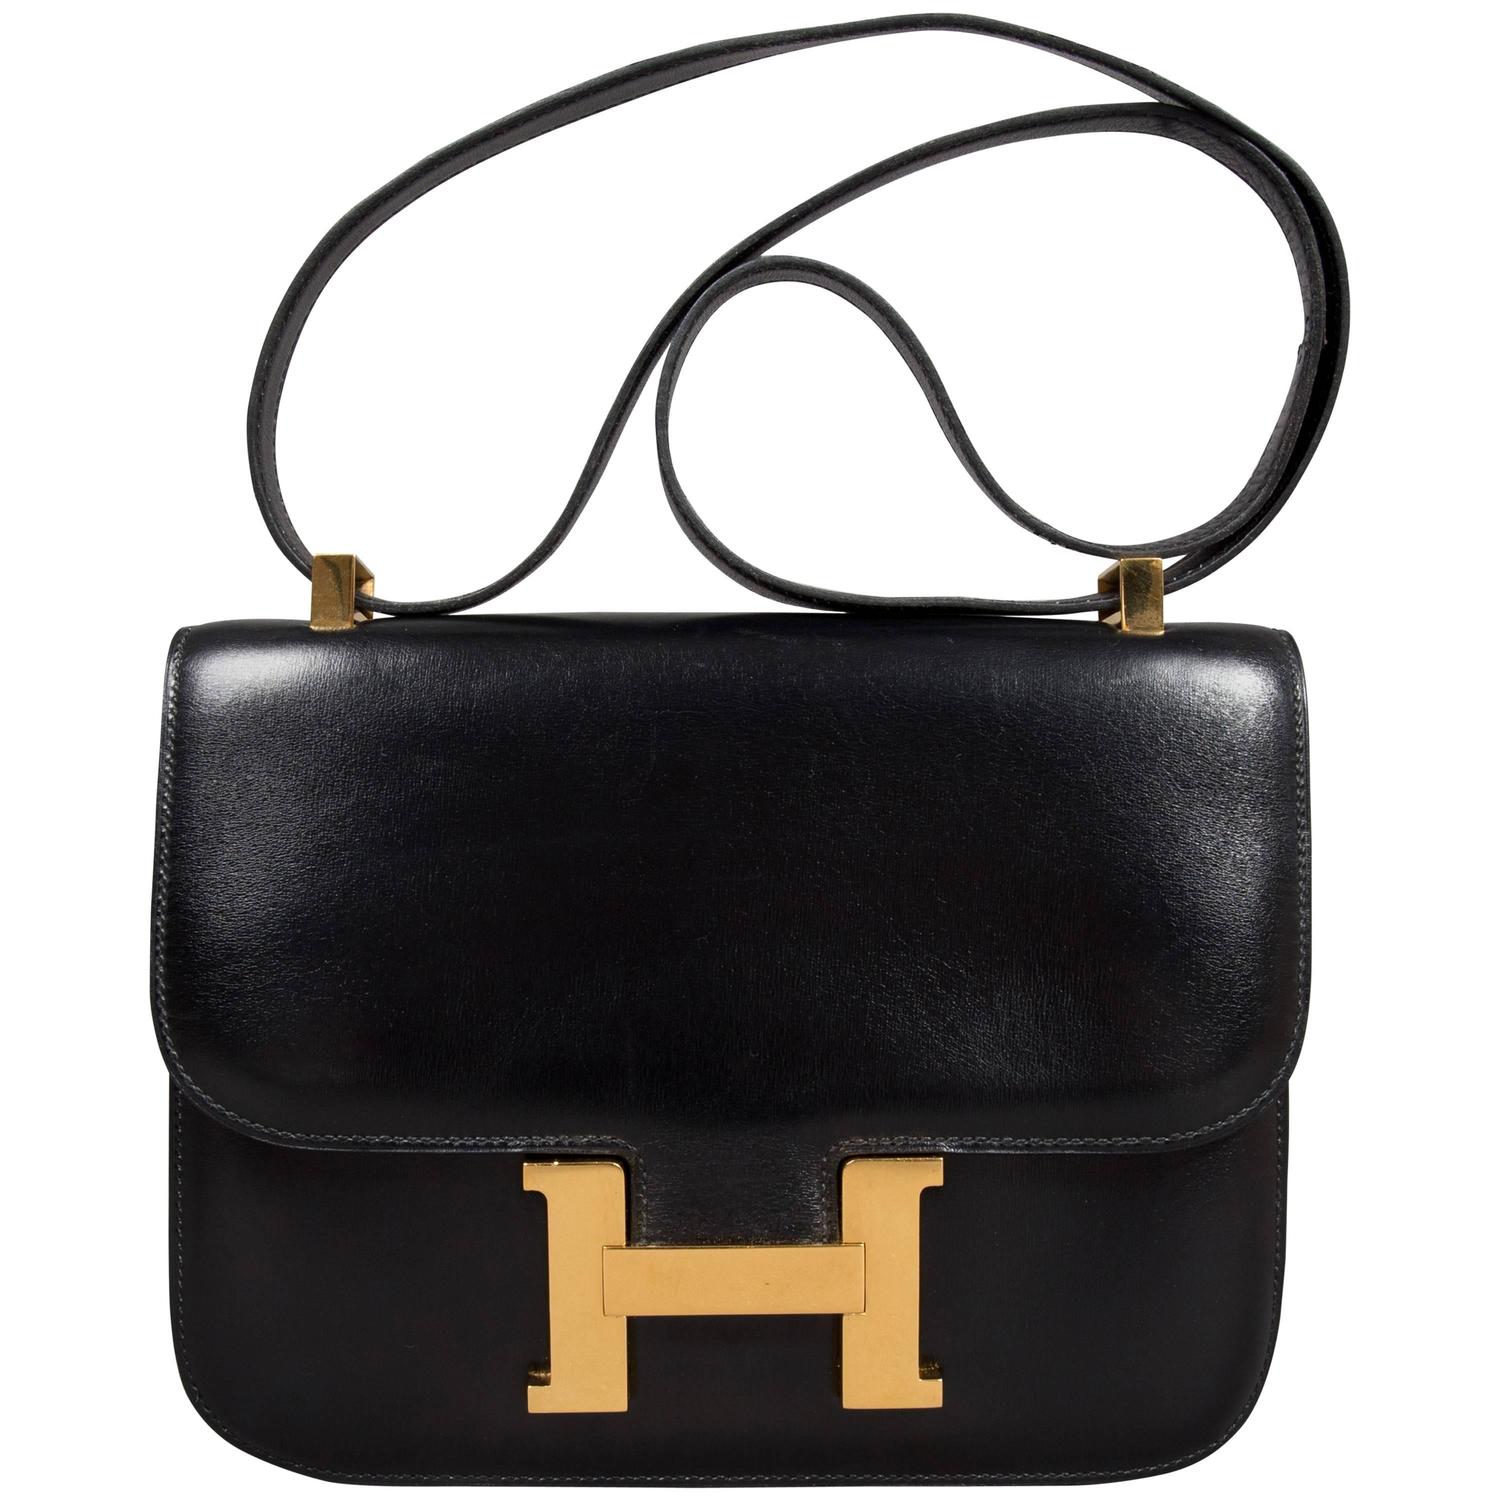 Hermes Constance Black H bag with gold hardware 23 cm For Sale at 1stdibs